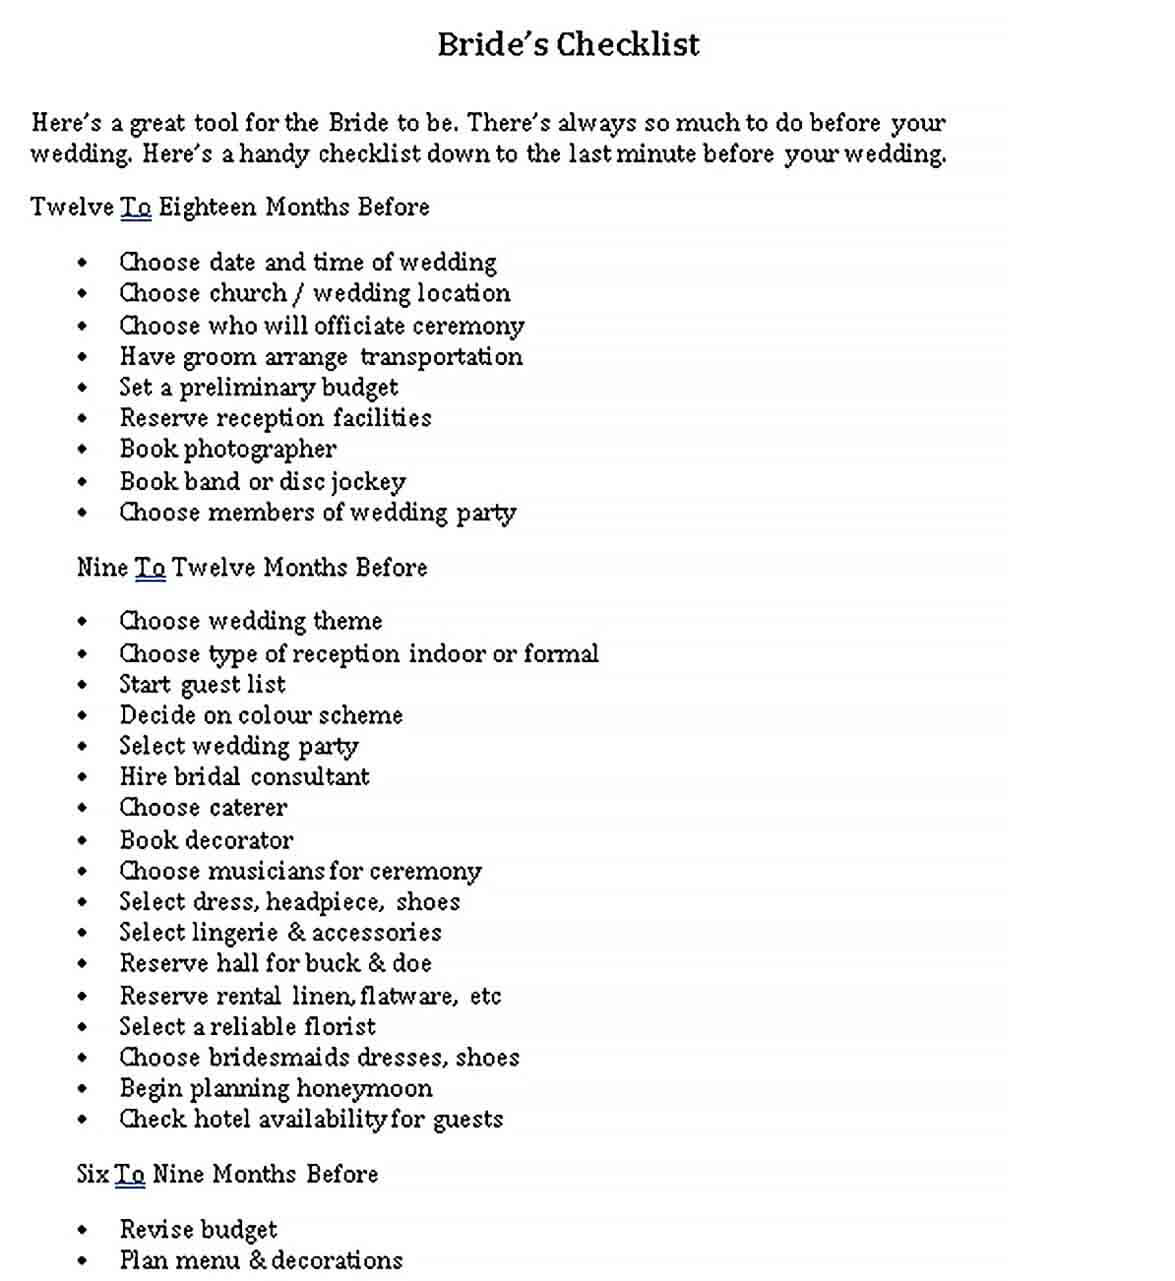 Sample Bride Checklist 1